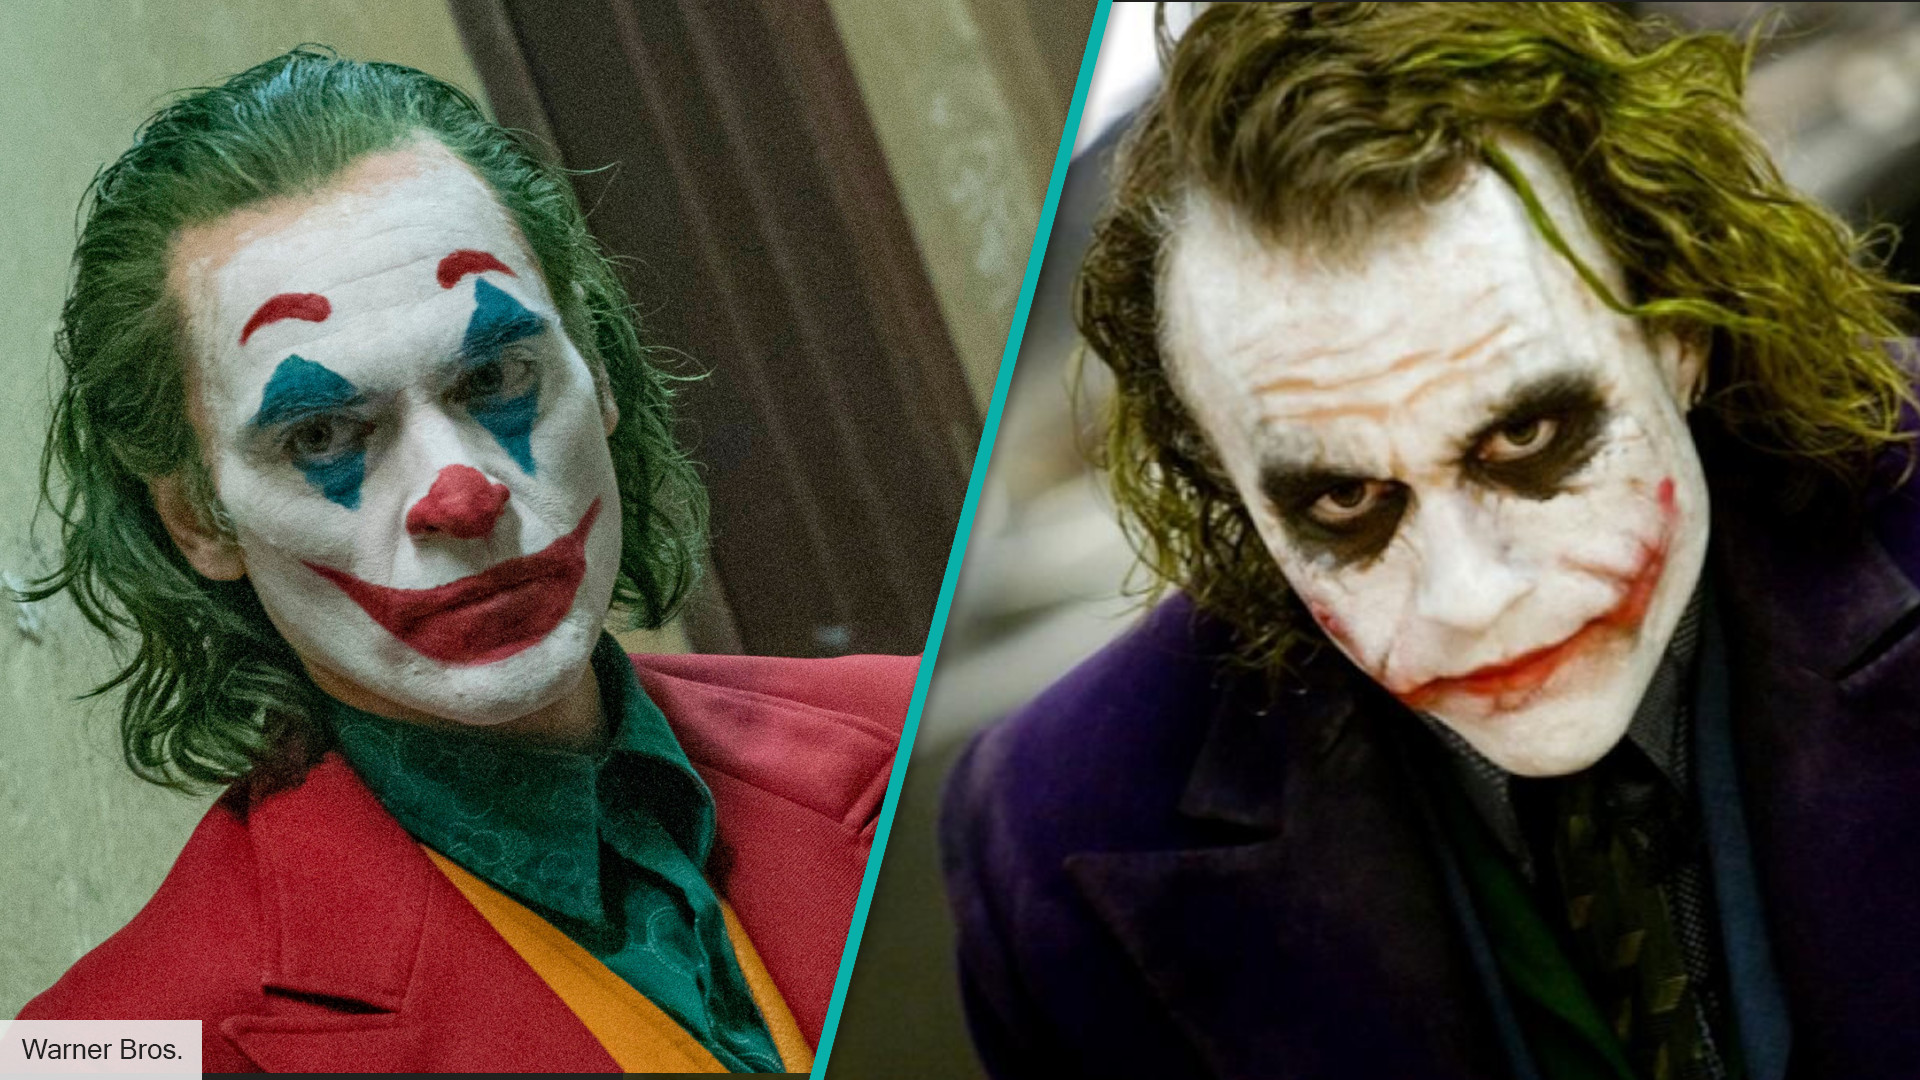 The Batman deleted scene reveals The Joker